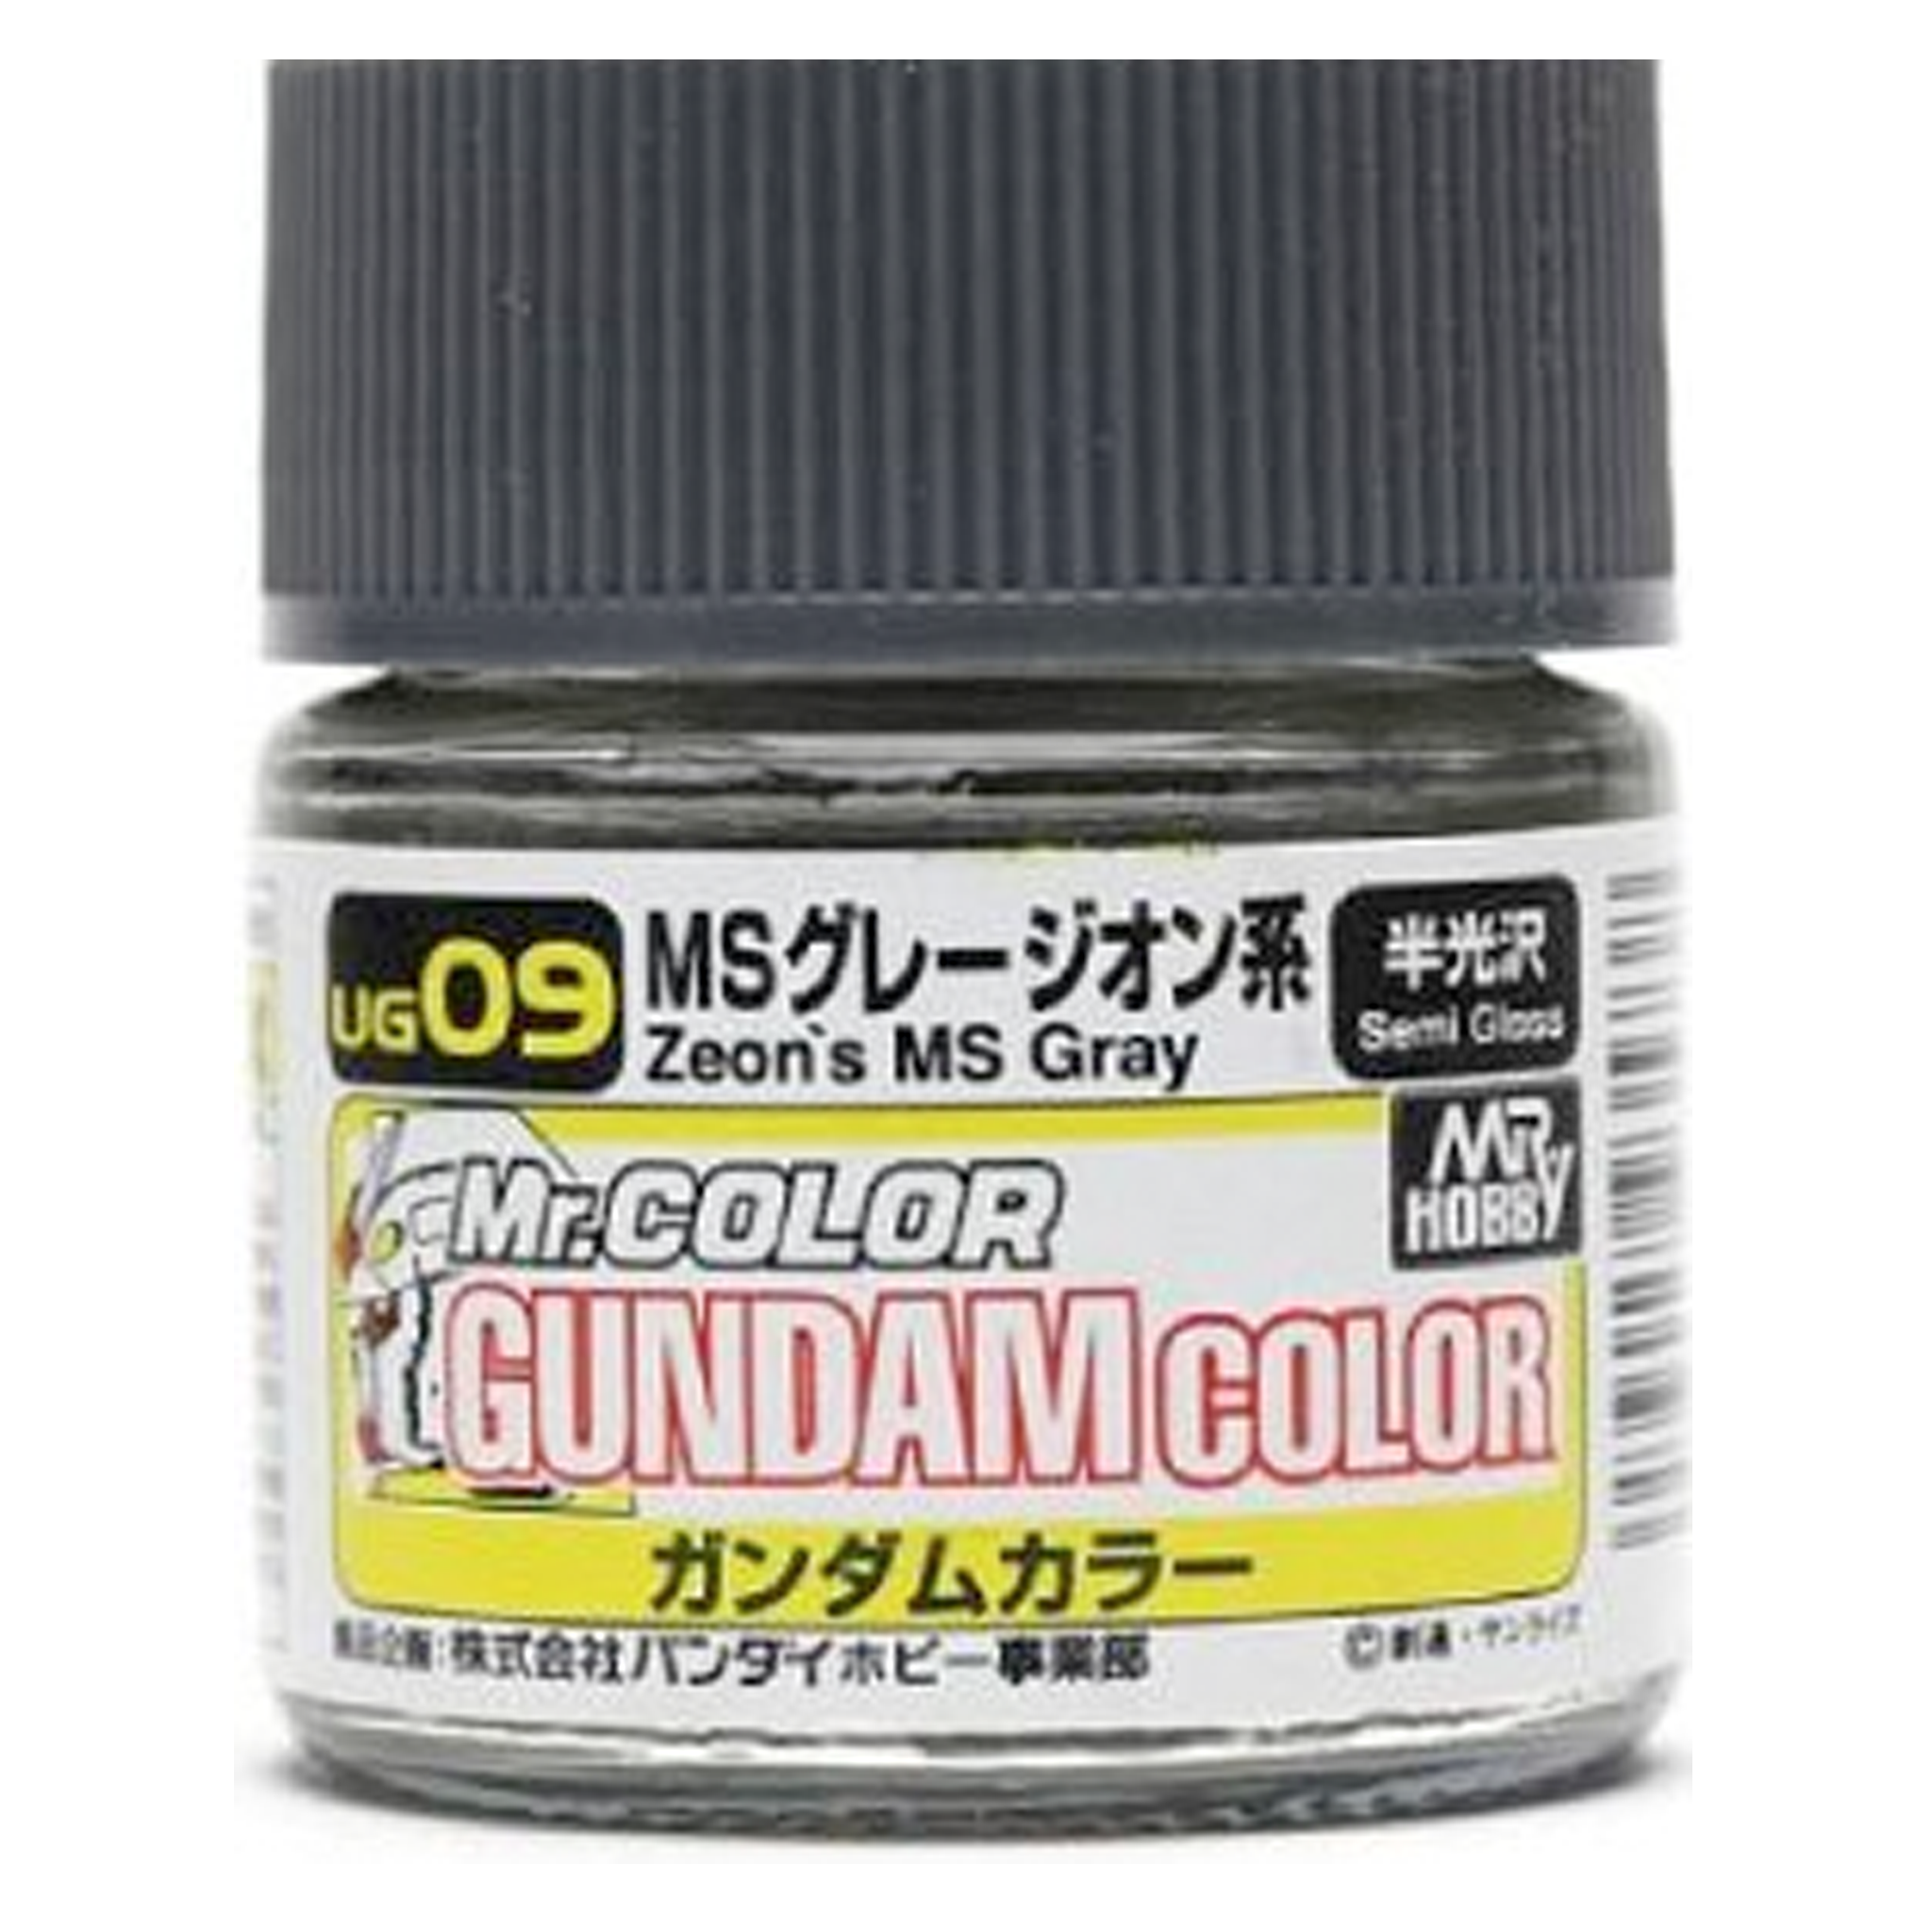 Mr. Color Gundam Color Zeon's MS Grey (Semi Gloss) 09